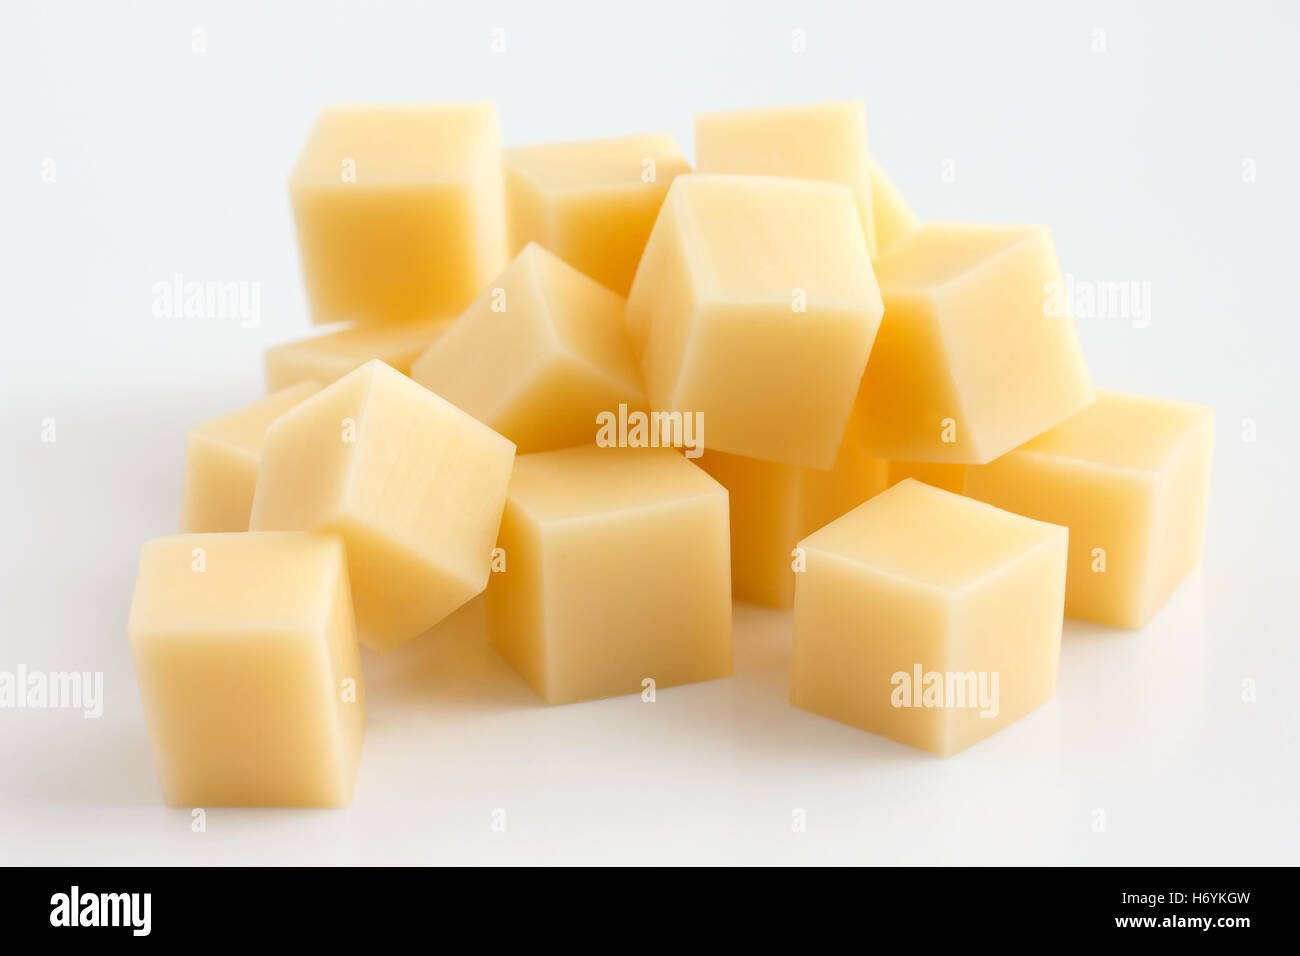 Cubetti di formaggio giallo impilati in maniera casuale sul bianco. Foto Stock